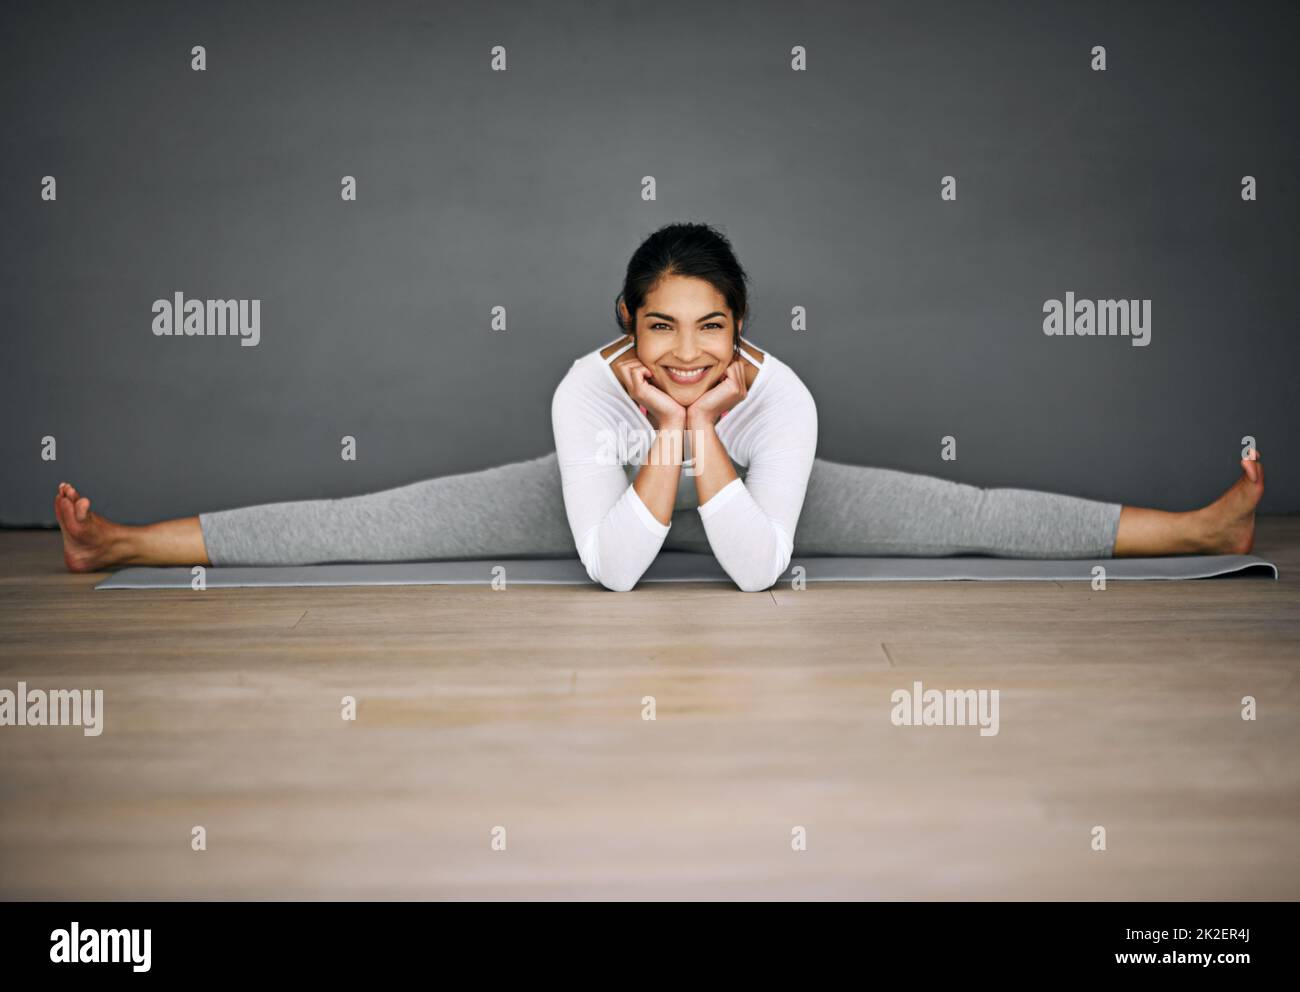 Sie werden erstaunt sein, was Ihr Körper erreichen kann. Porträt einer attraktiven jungen Frau, die die Splits in ihrer Yoga-Routine macht. Stockfoto